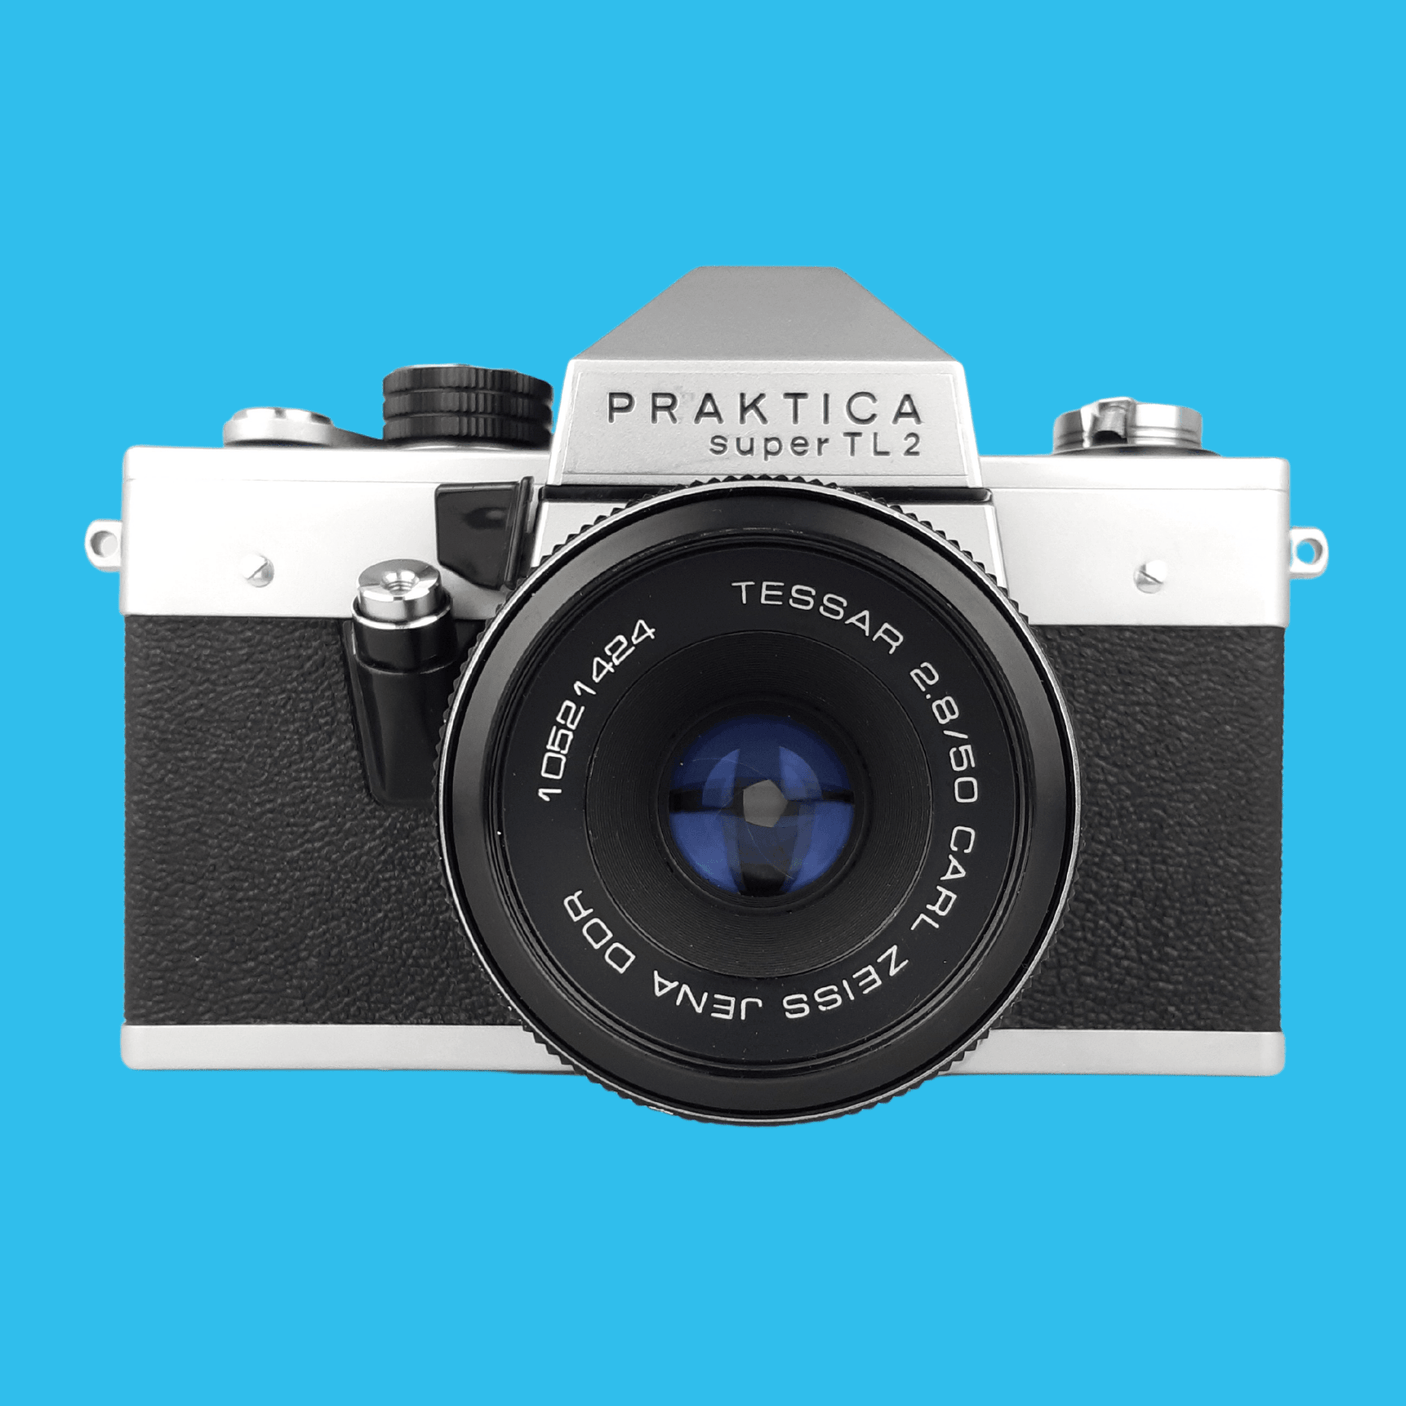 Praktica Vintage Metal 35mm SLR Film Camera with Prime Lens